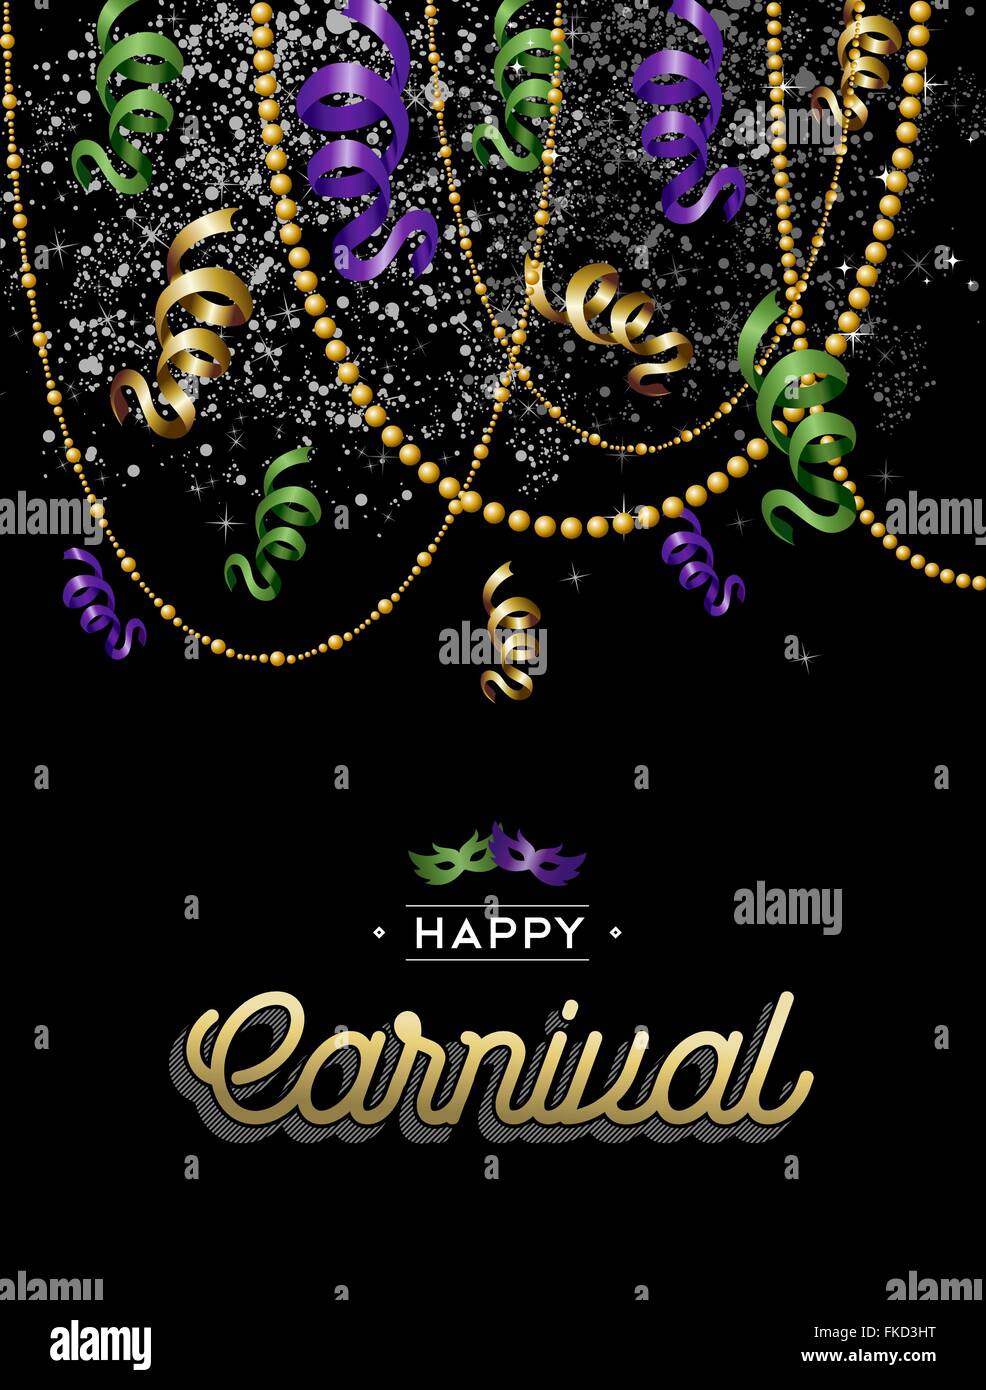 Felice design di carnevale, party decorazione in oro, viola e verde con etichetta di testo. EPS10 vettore. Illustrazione Vettoriale